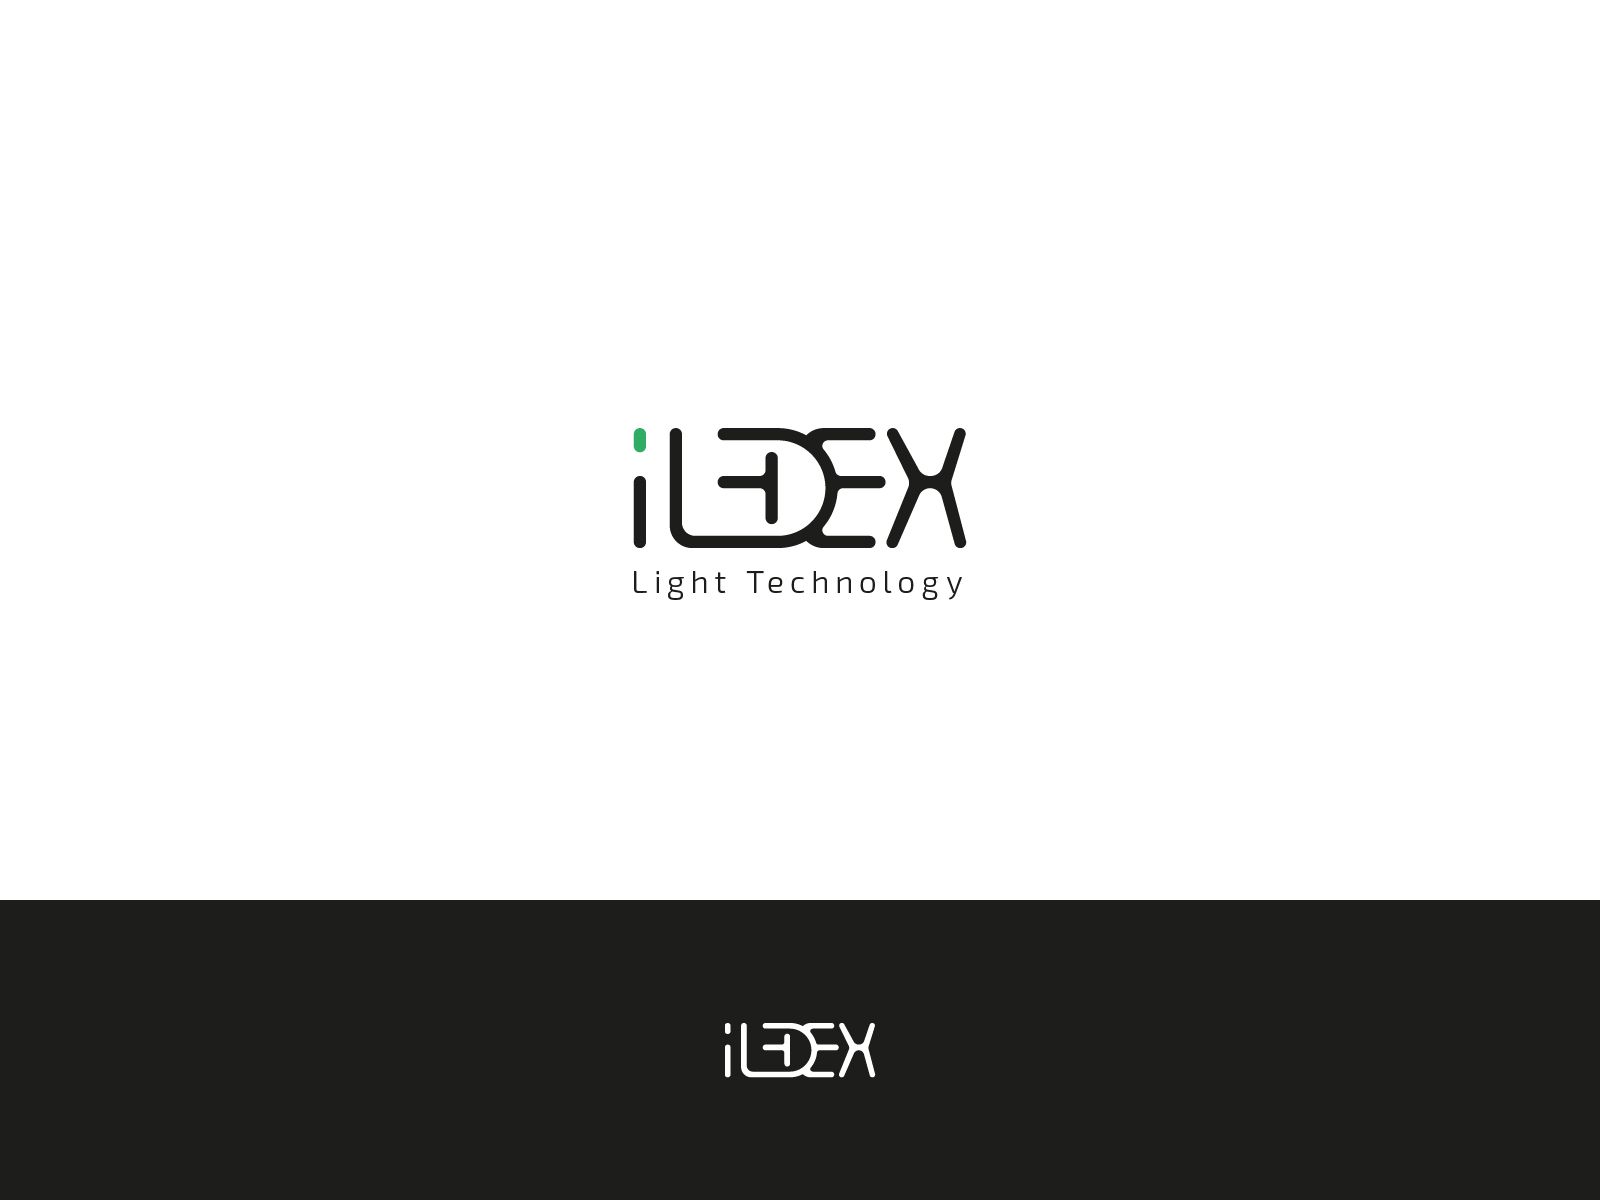 Лого и фирменный стиль для iLedex - дизайнер NukkklerGOTT